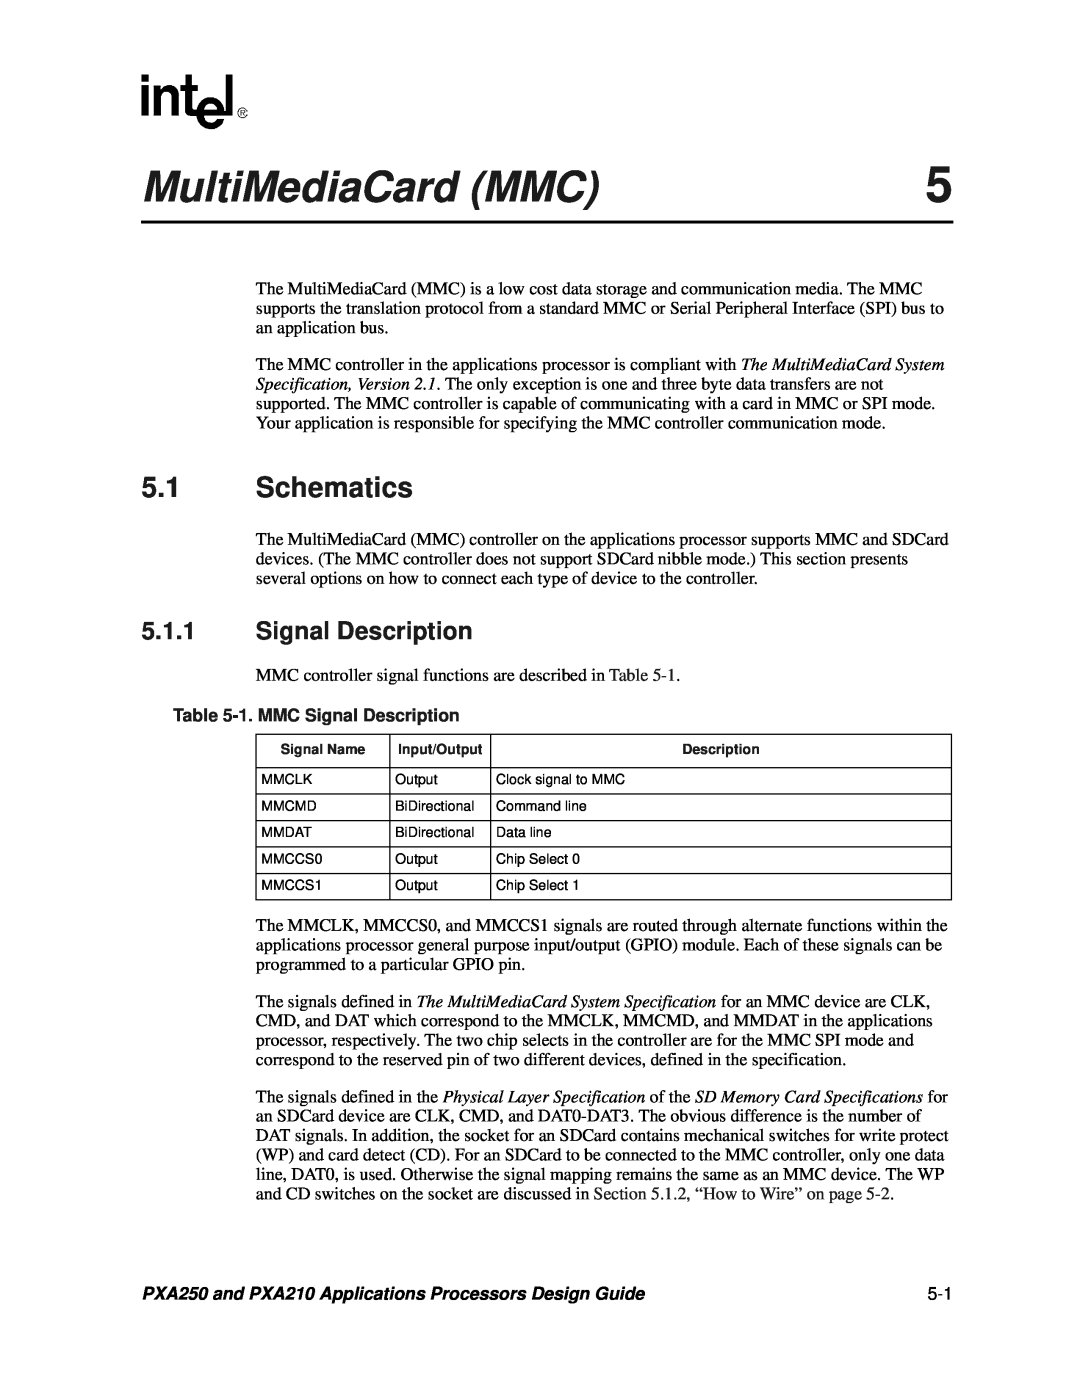 Intel PXA250 and PXA210 manual MultiMediaCard MMC, Schematics, 1. MMC Signal Description 